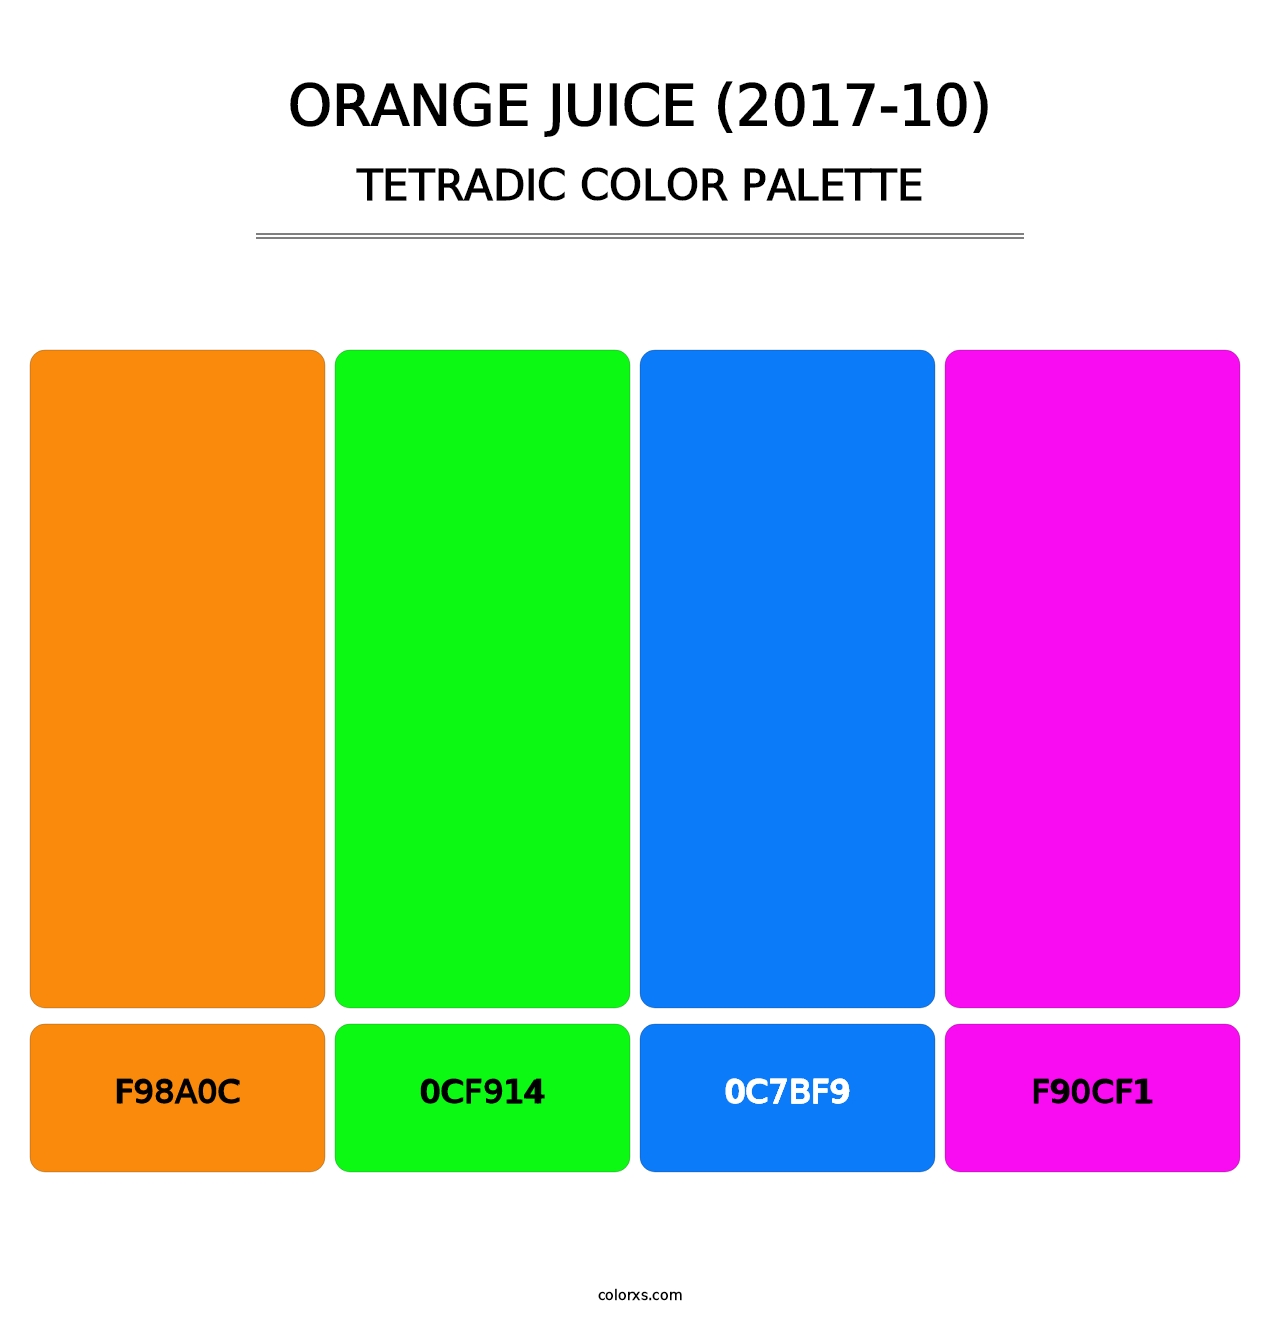 Orange Juice (2017-10) - Tetradic Color Palette